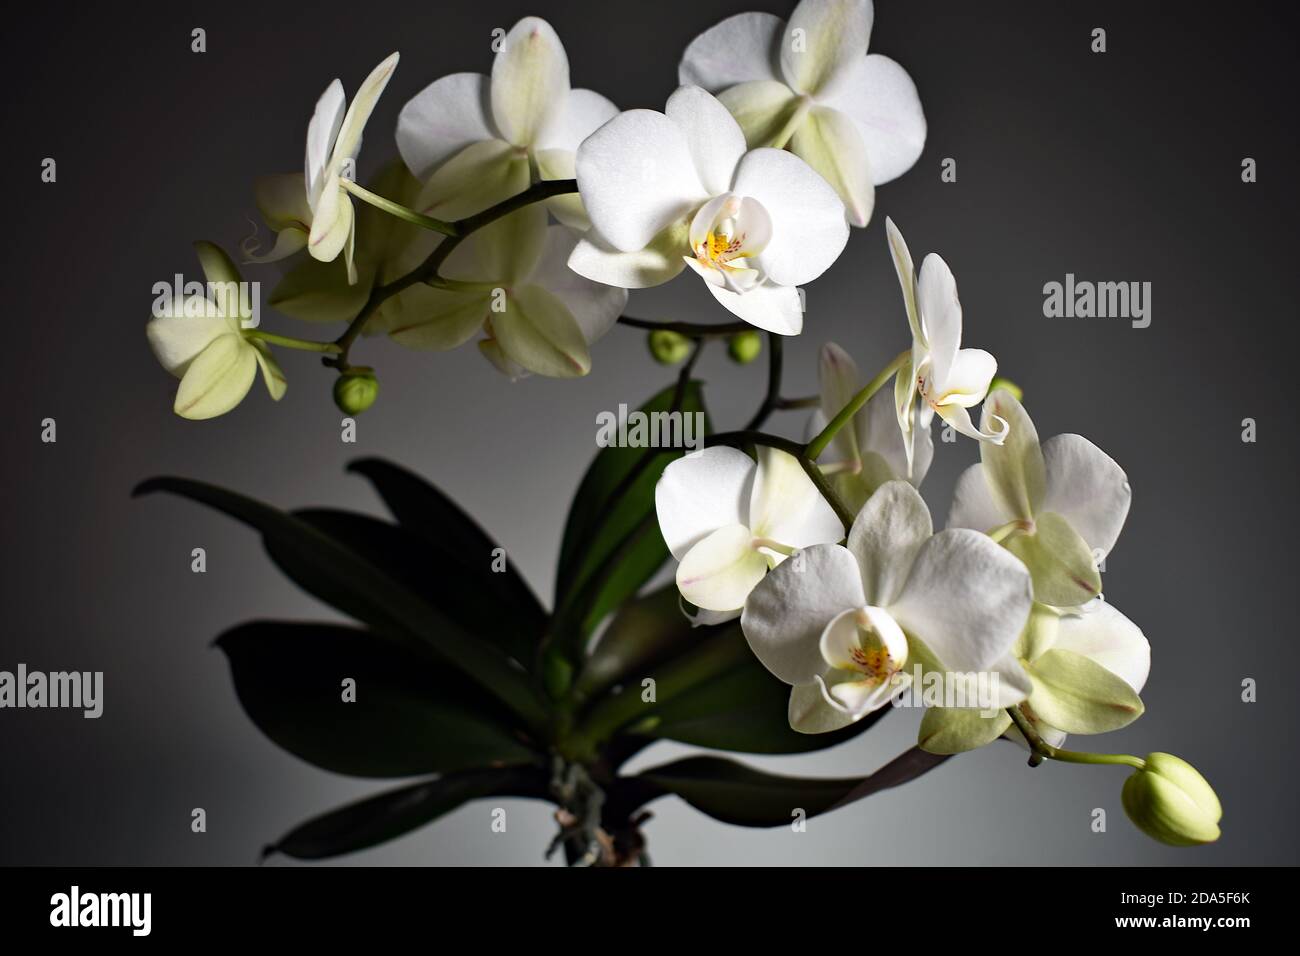 Eine Weiße Orchidee (Phalaenopsis) vor einem allmählich verblassenden weißen bis grauen Hintergrund. Die weiß blühende Orchidee scheint von einem Scheinwerfer beleuchtet zu werden. Stockfoto